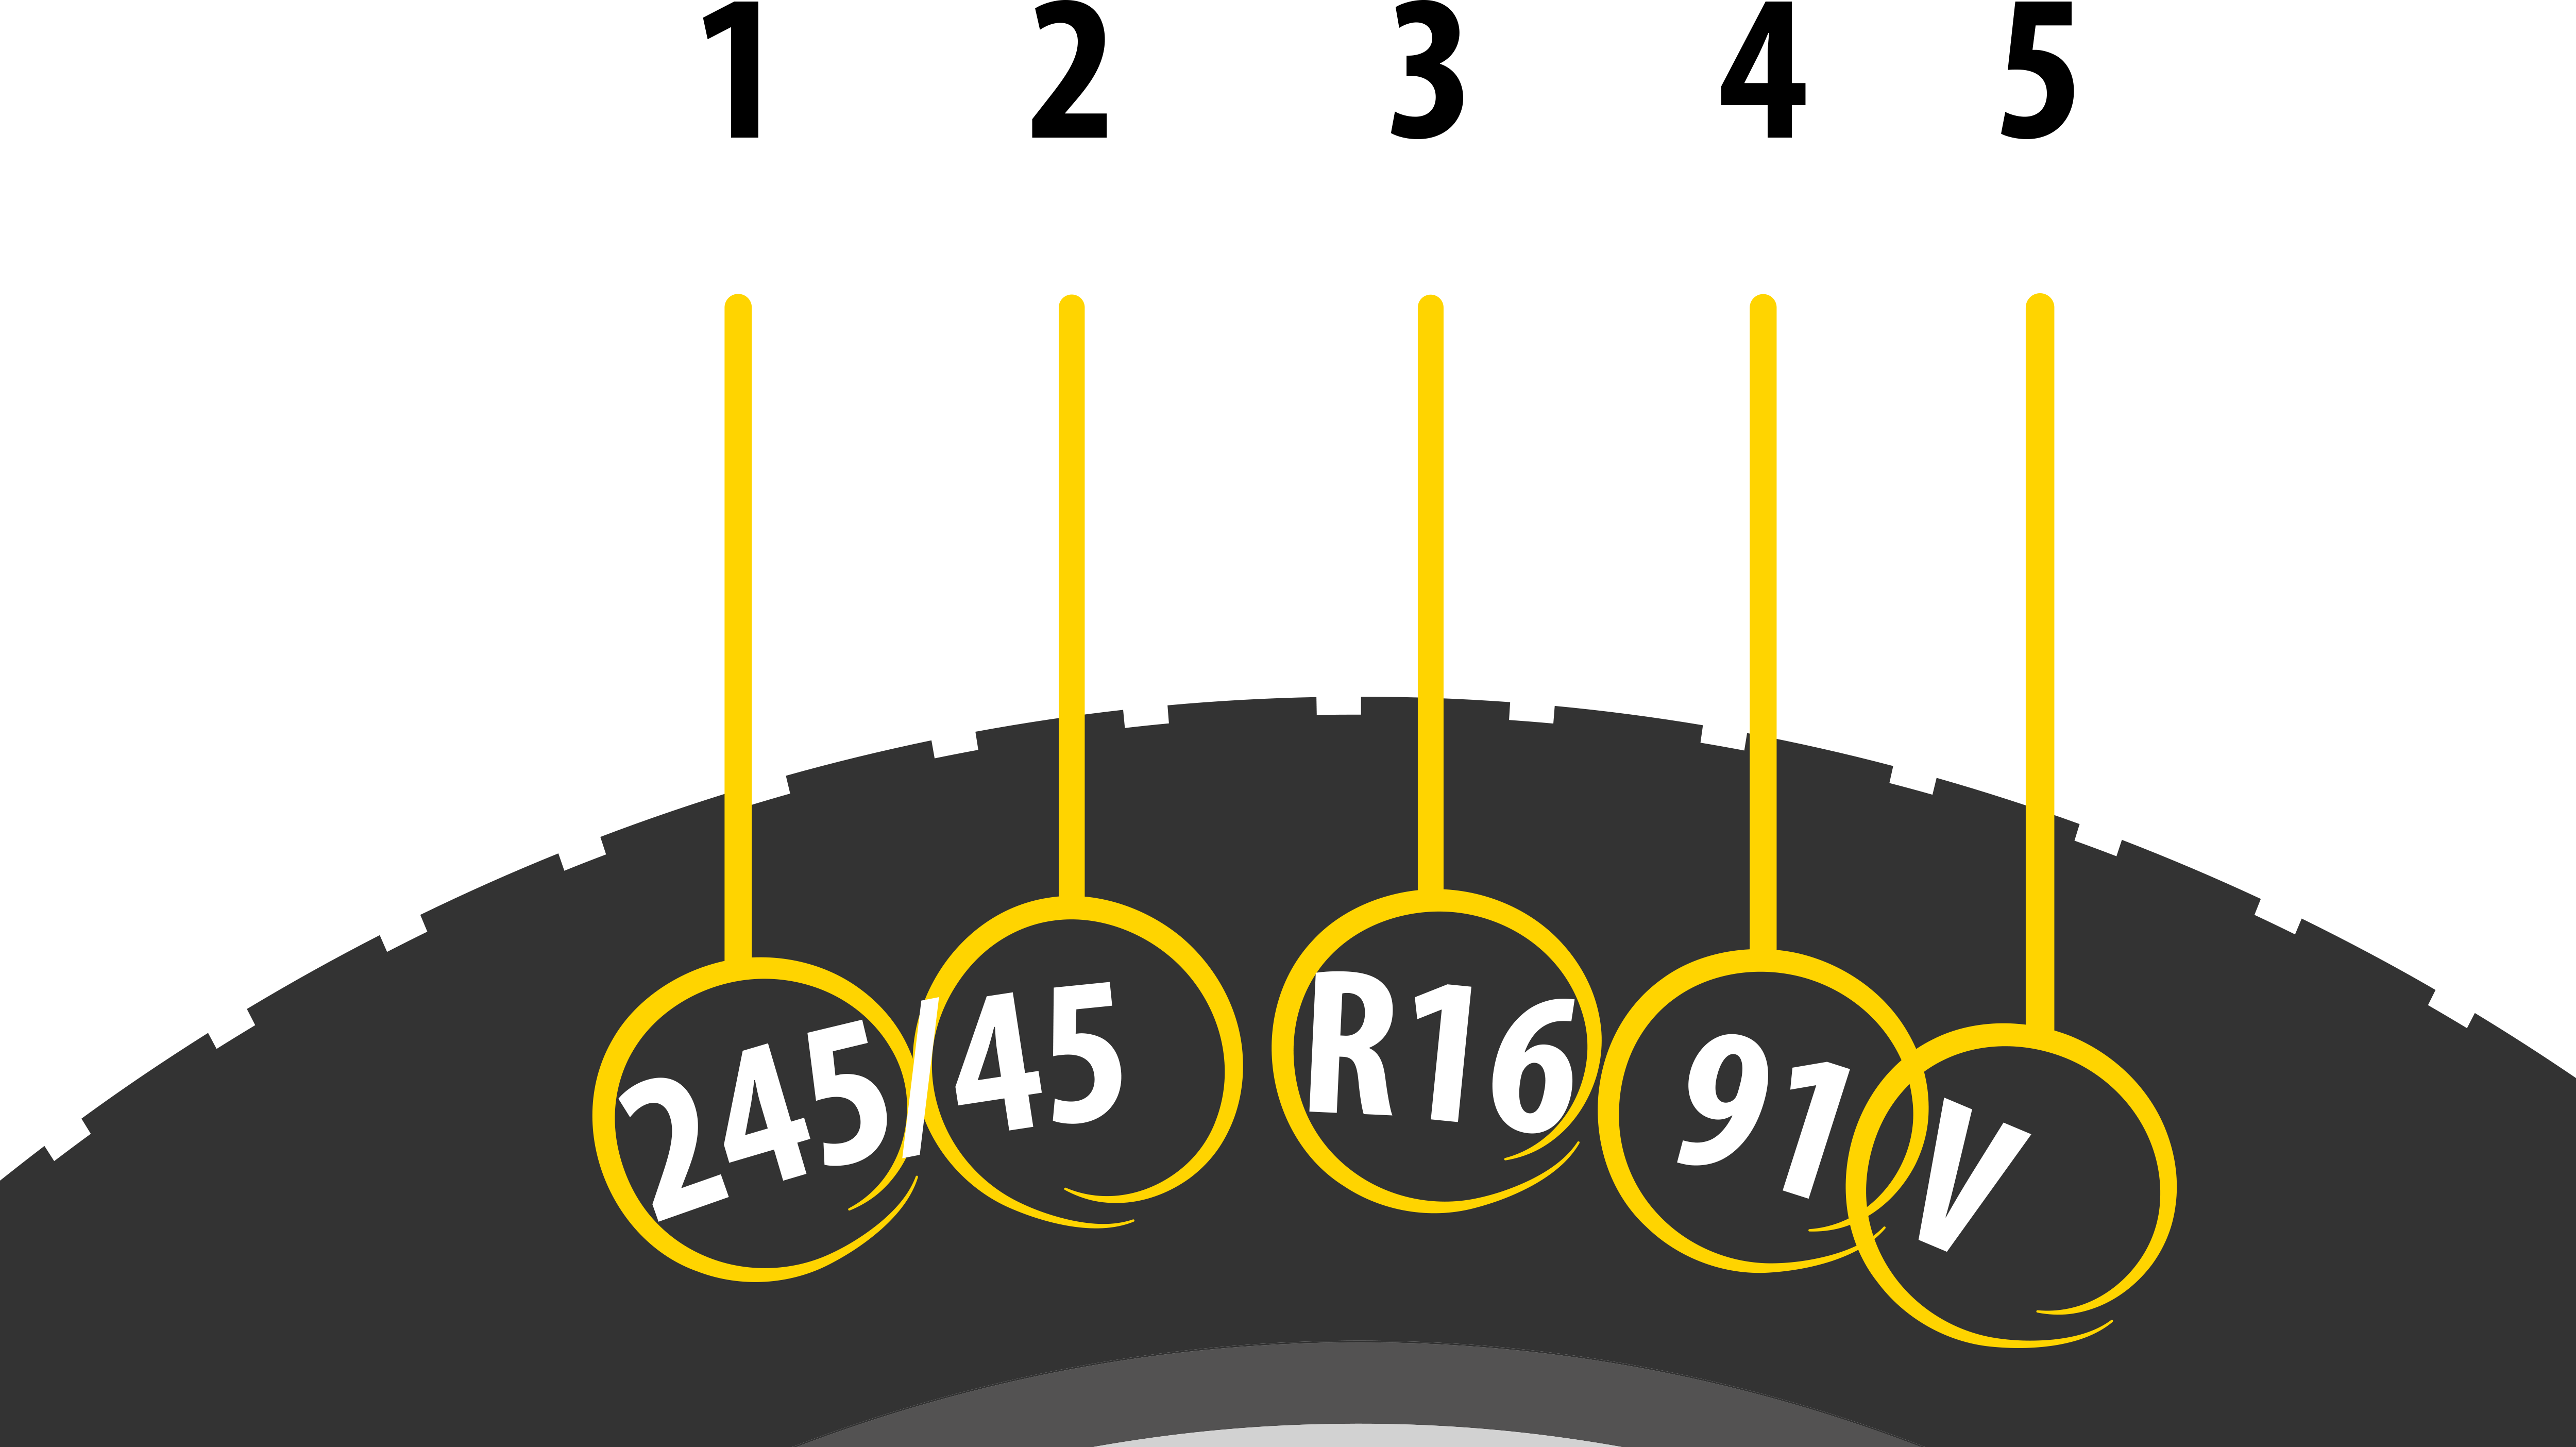 Tyre sizes